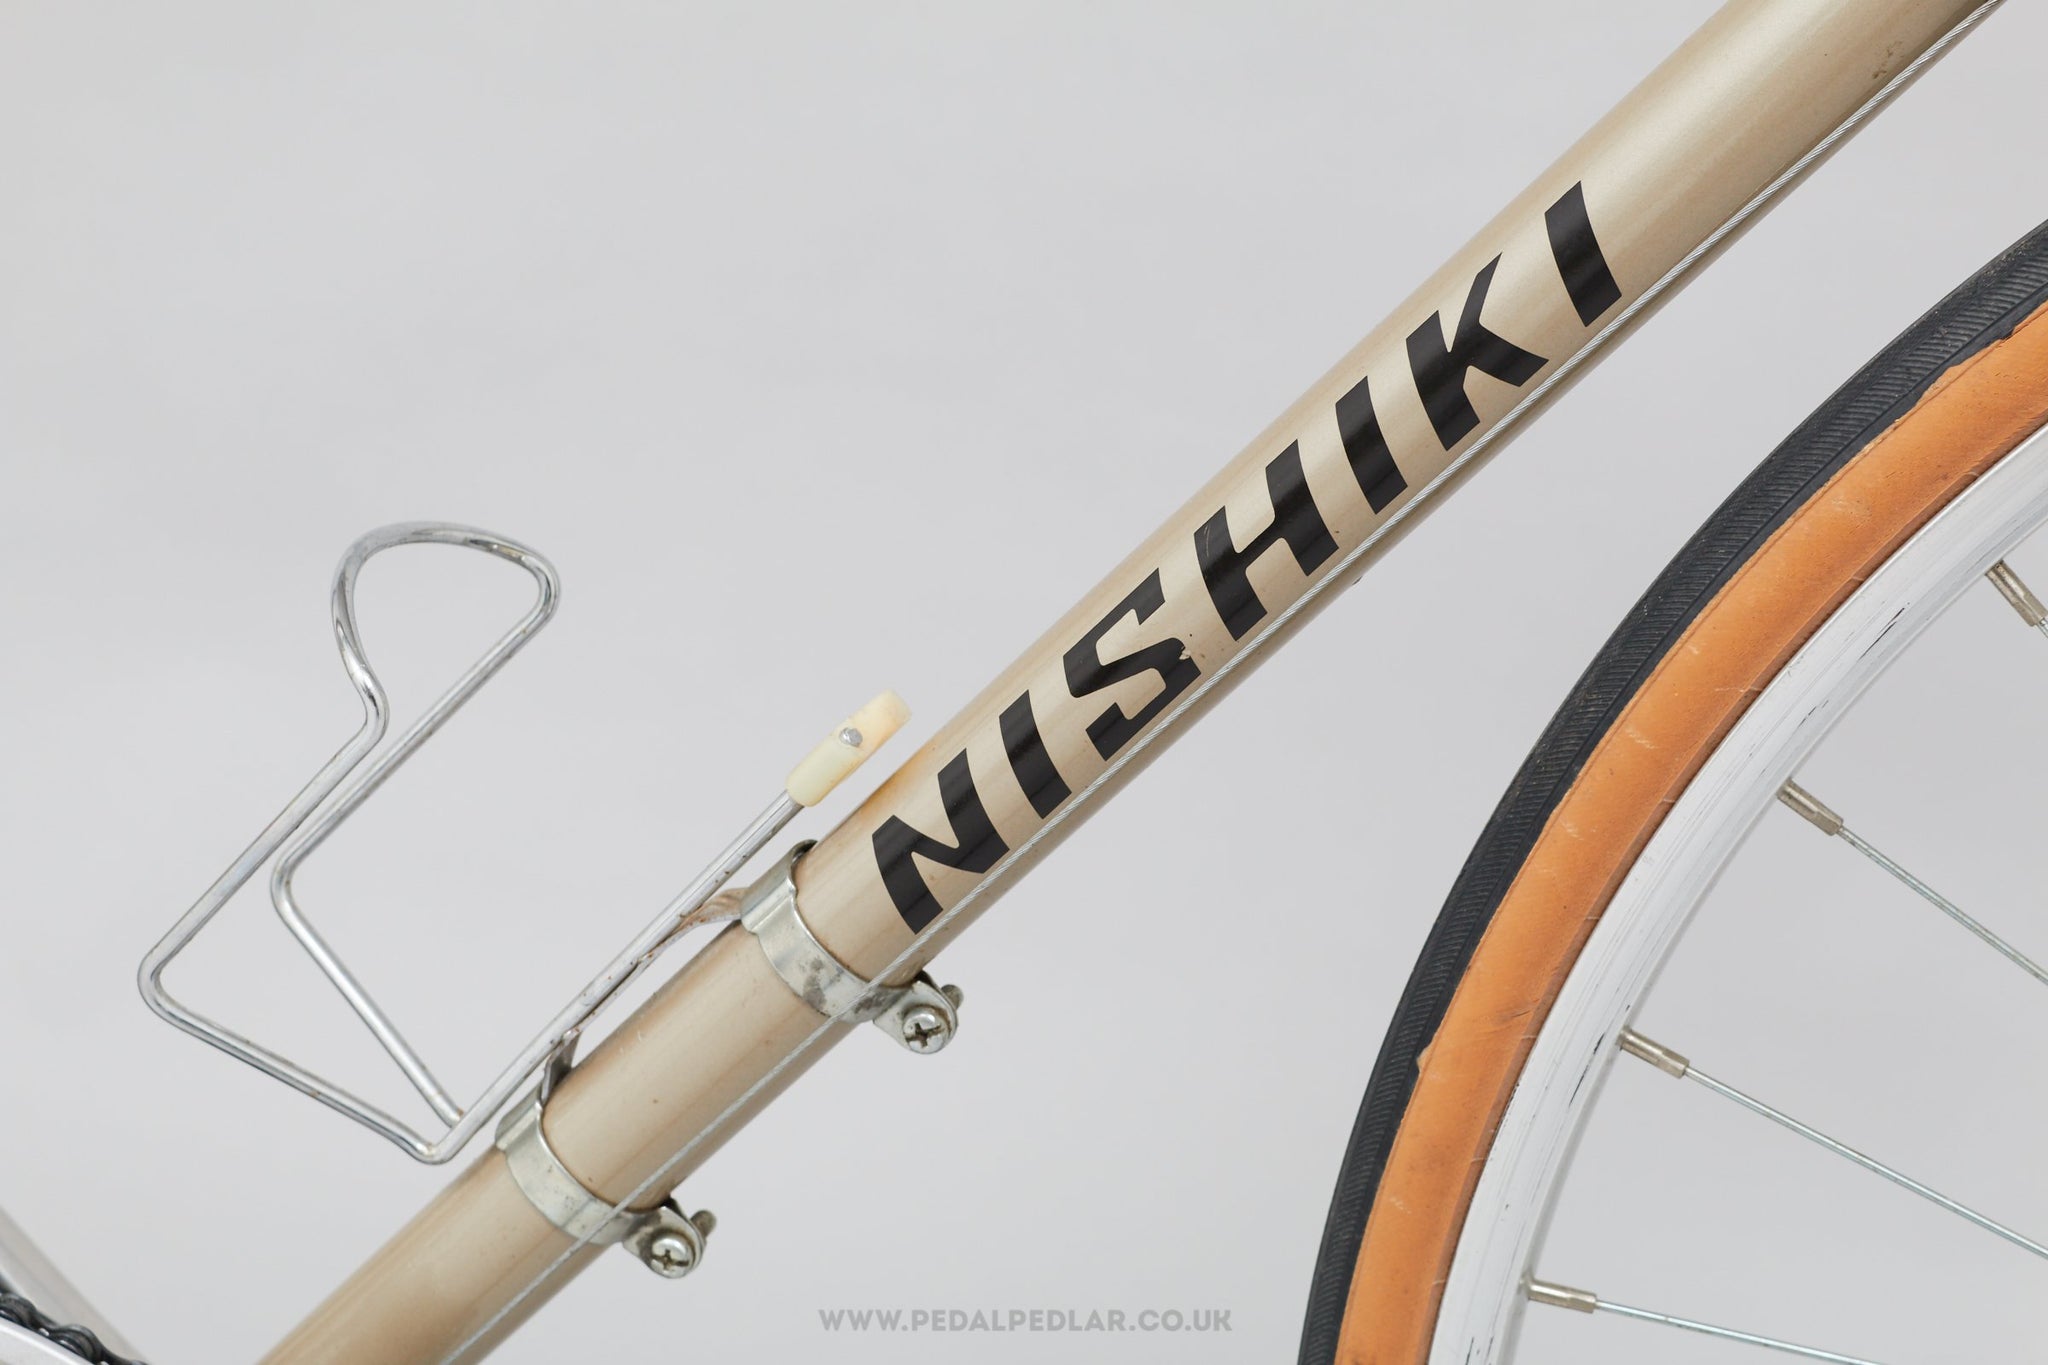 nishiki bike pedals